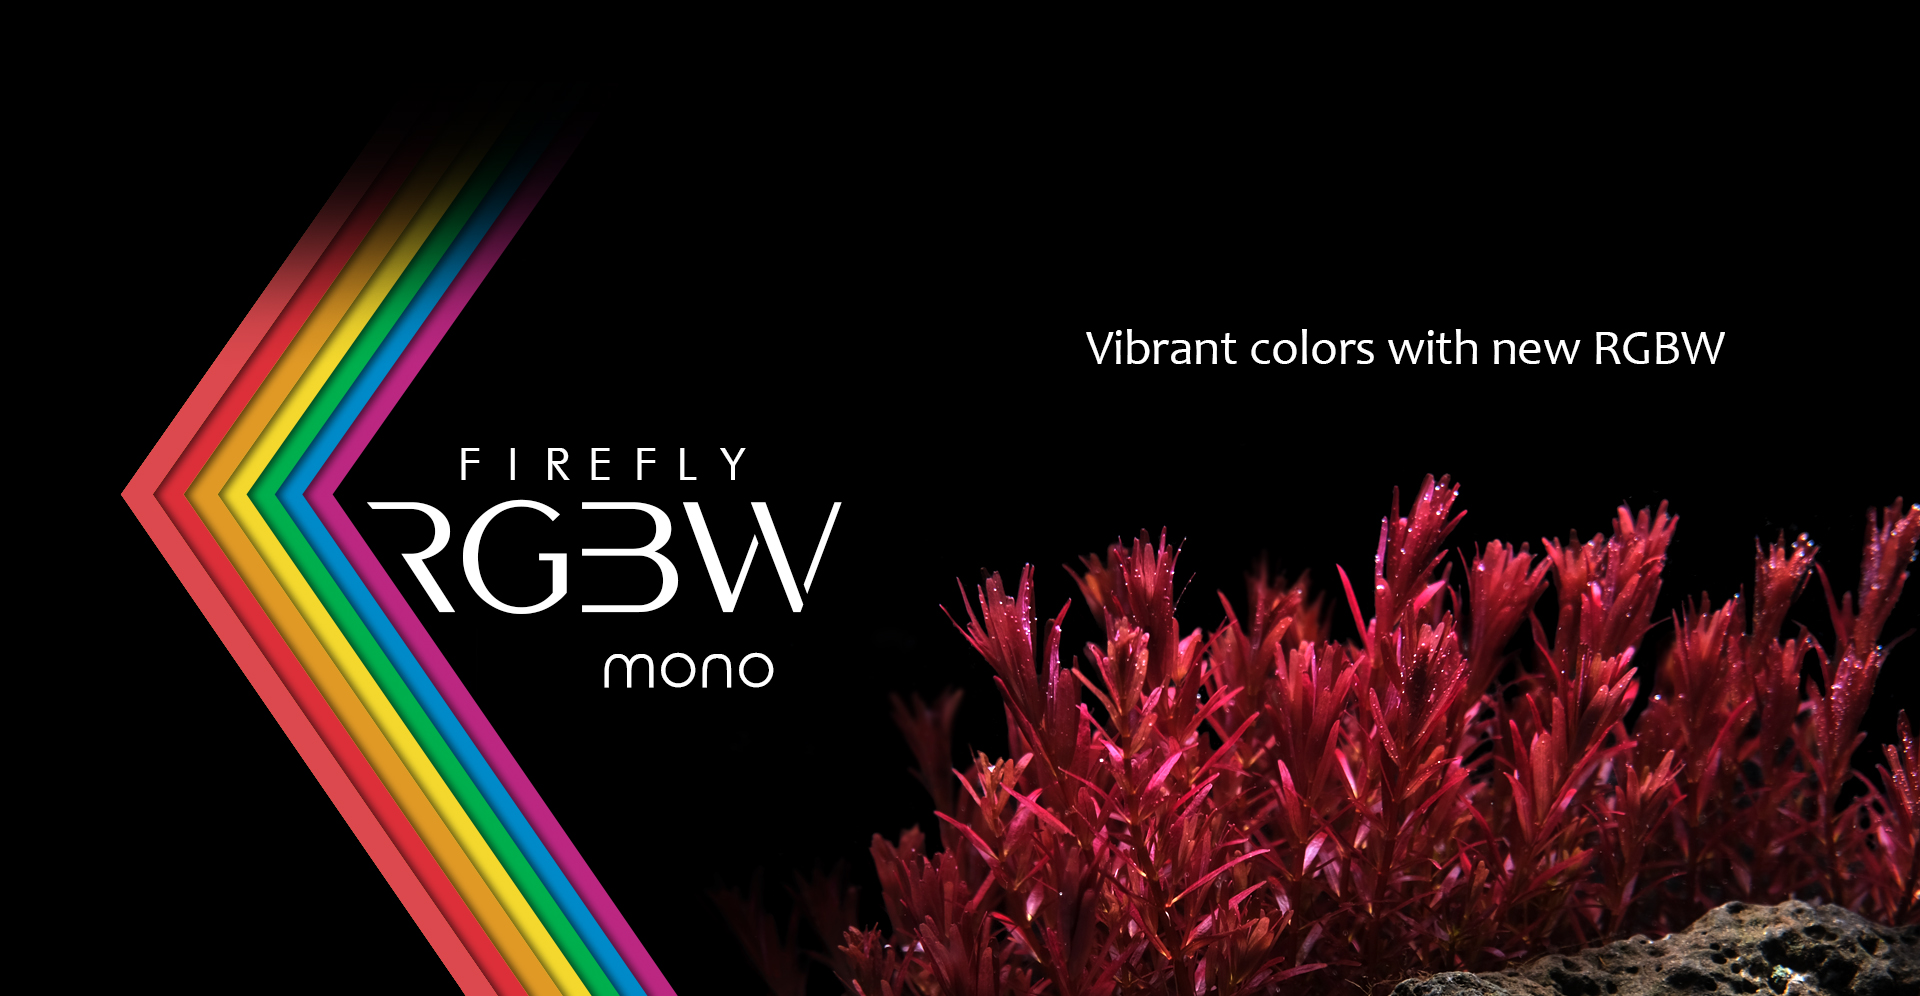 Firefly RGBW mono